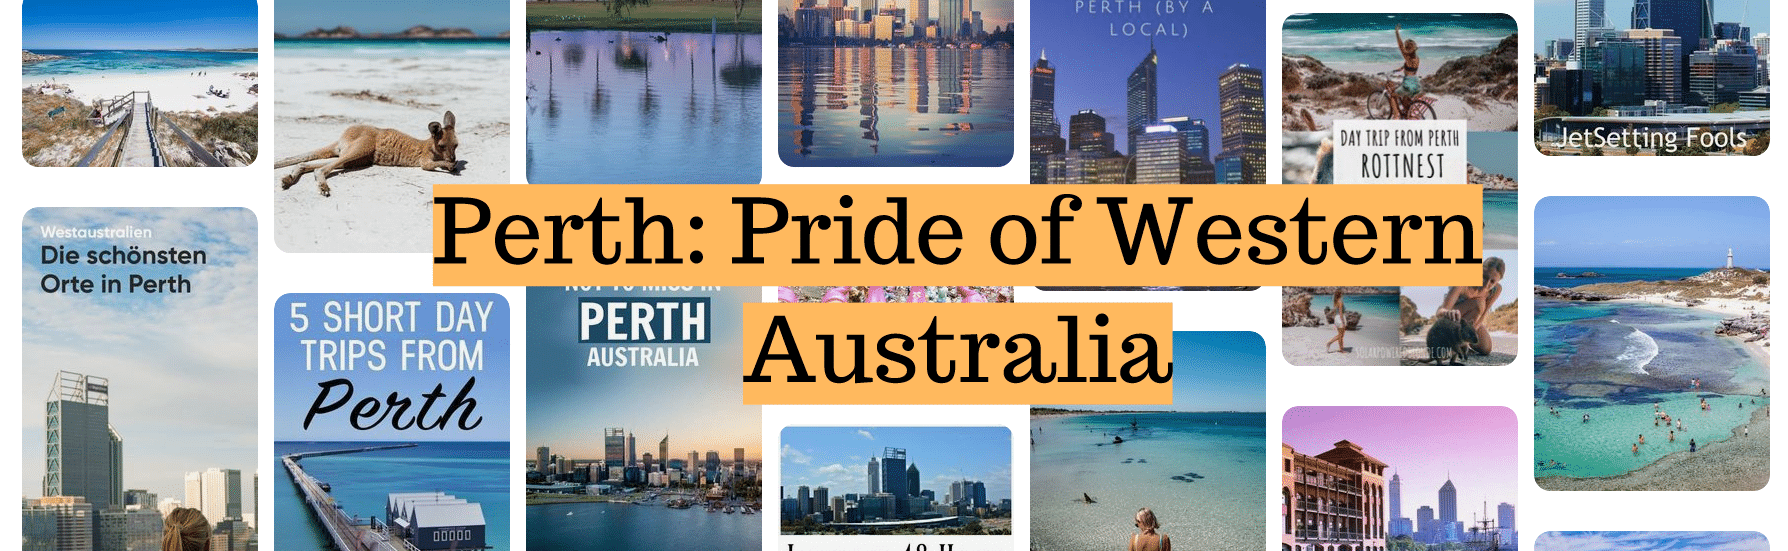 Perth Pride of Western Australia